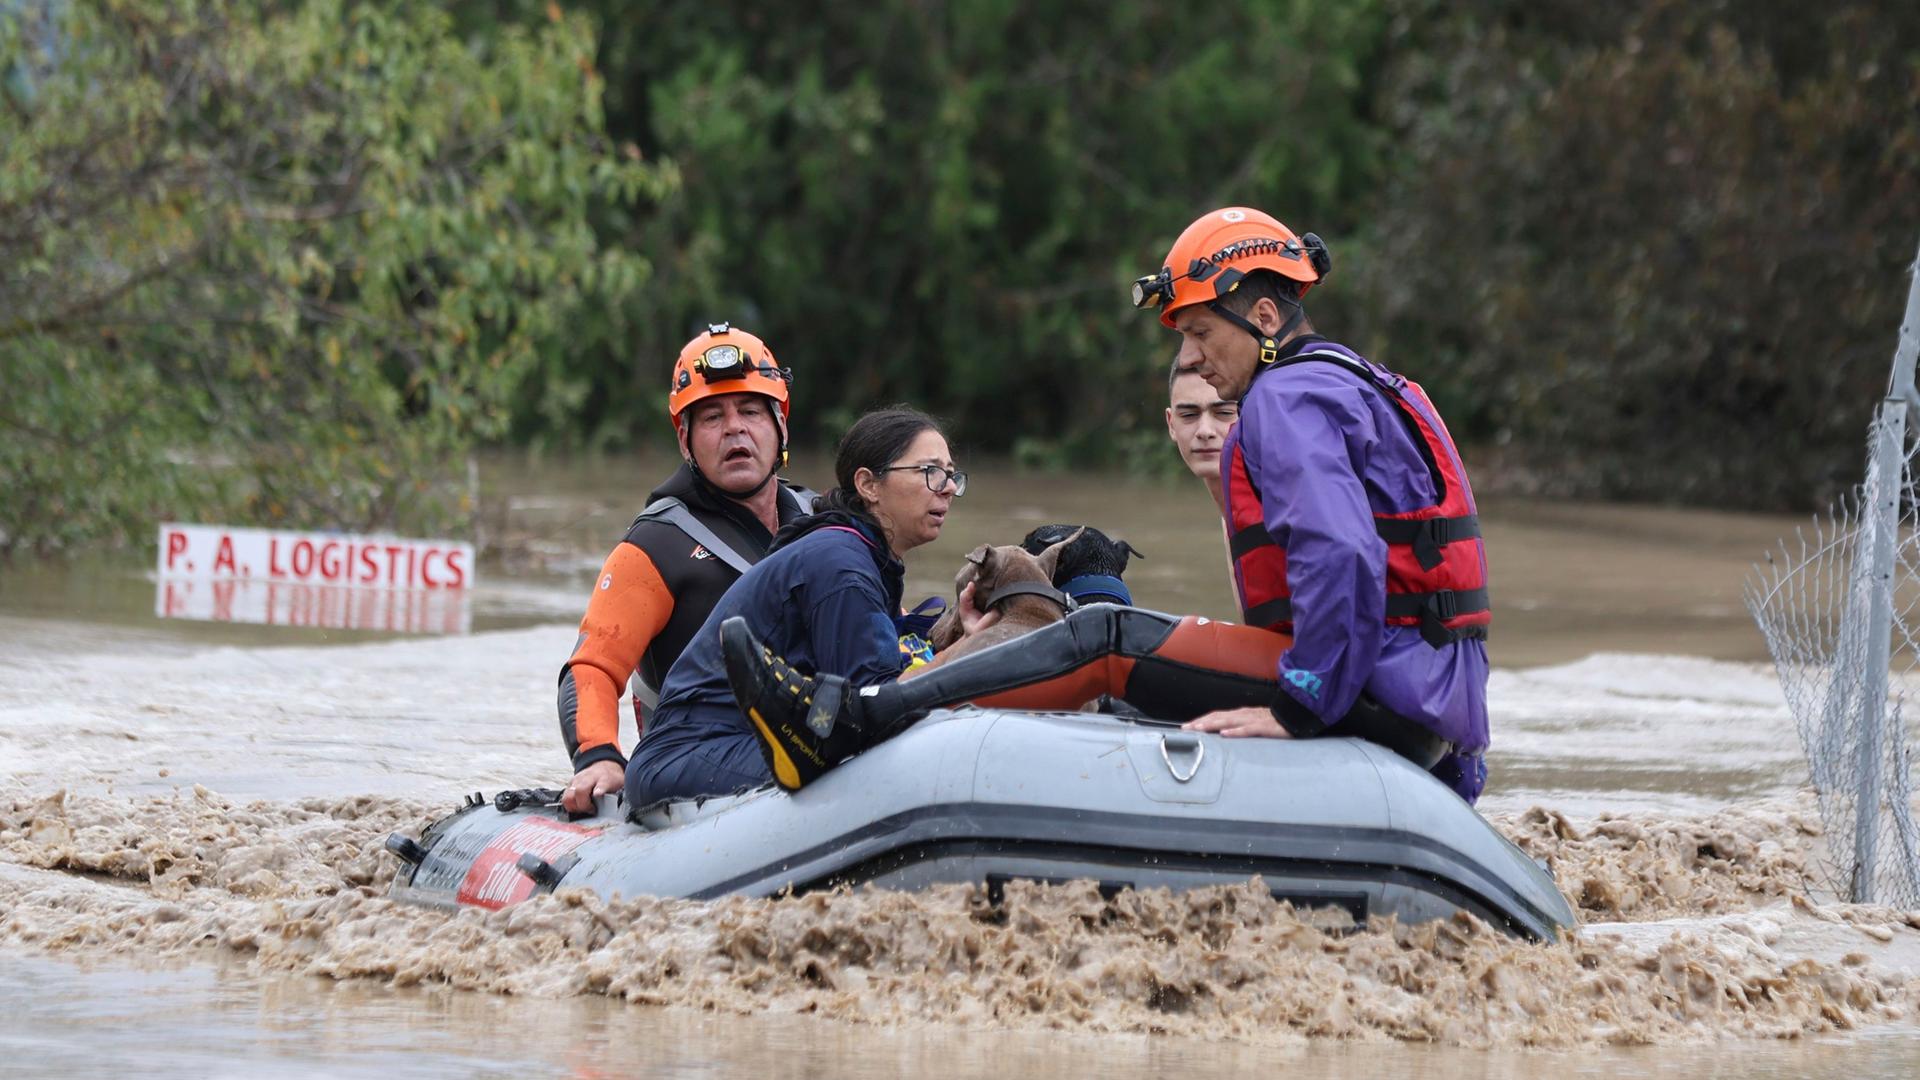 Griechenland, Larissa: Feuerwehrleute mit einem Schlauchboot evakuieren Menschen aus einem überfluteten Gebiet.